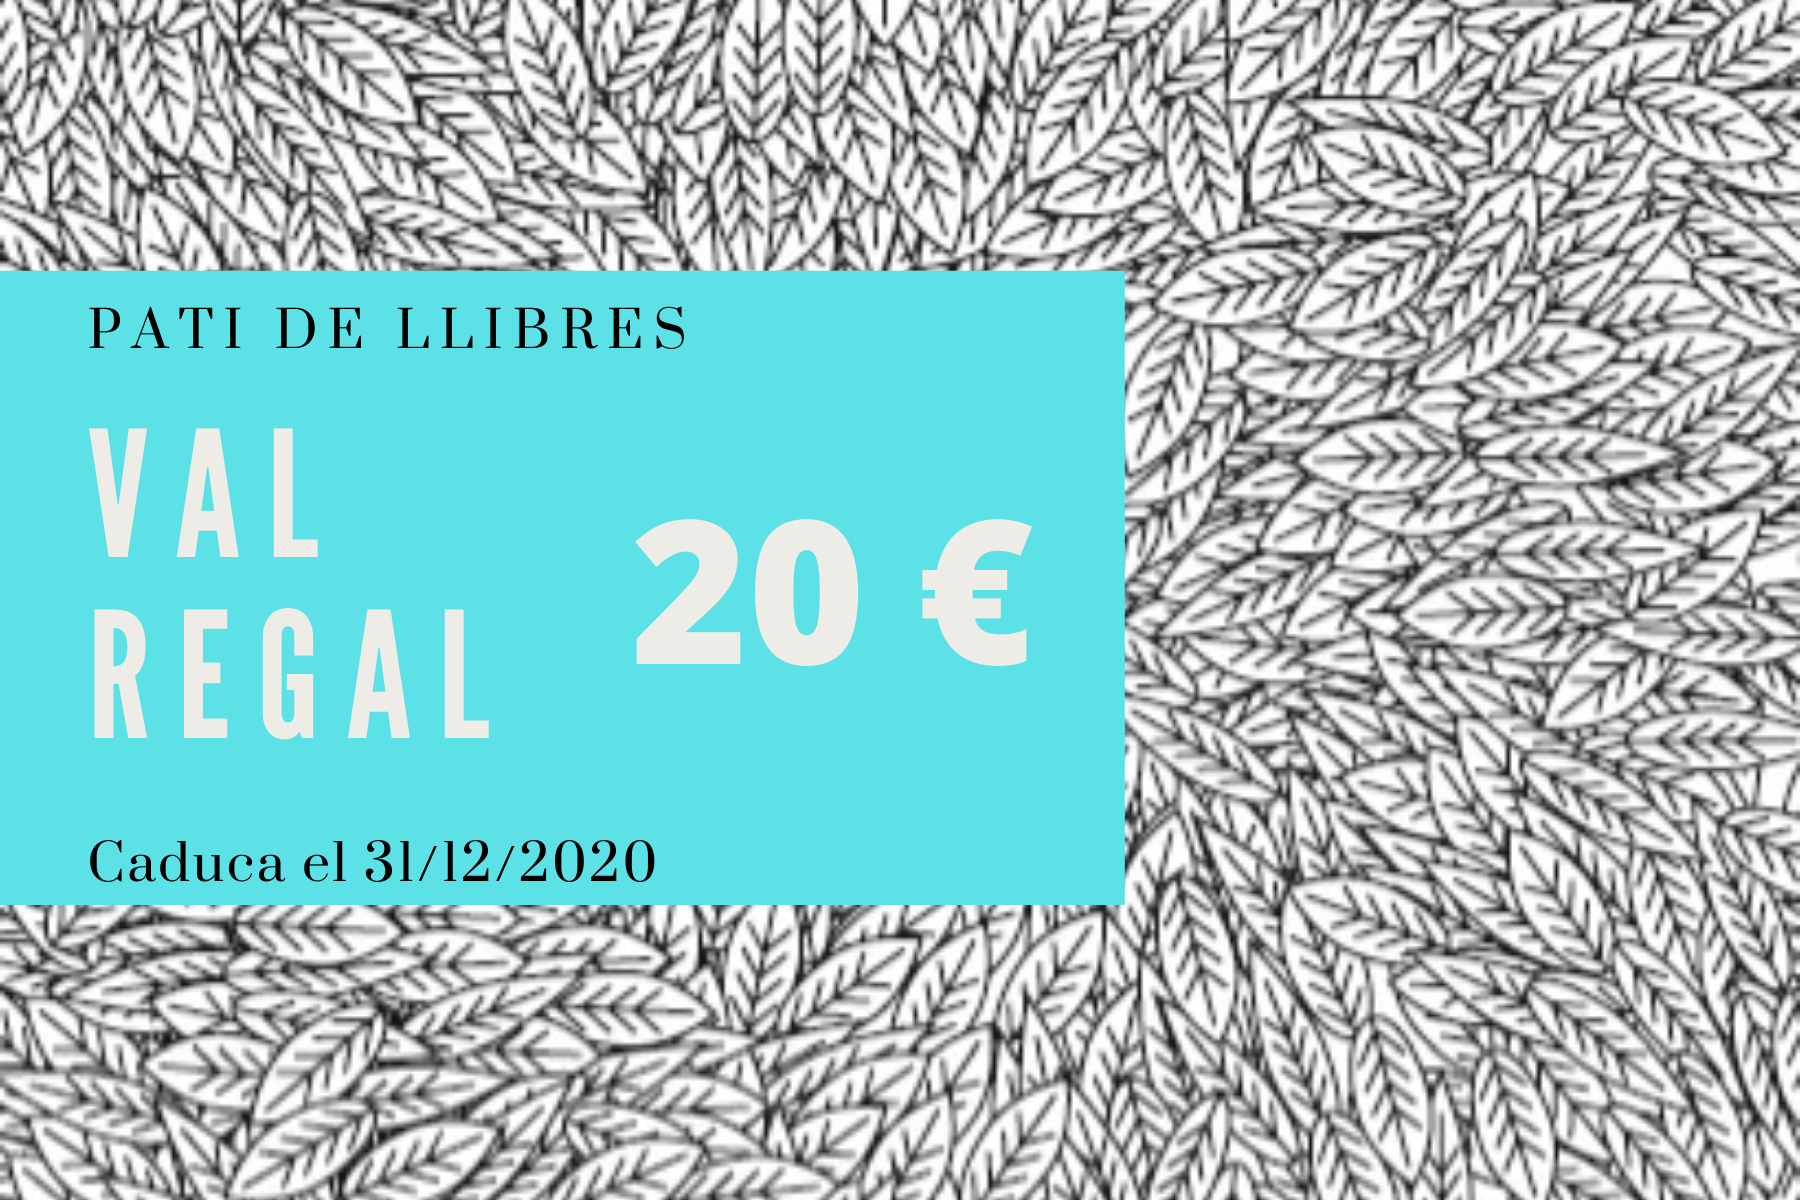 Val regal 20 euros - Pati de Llibres